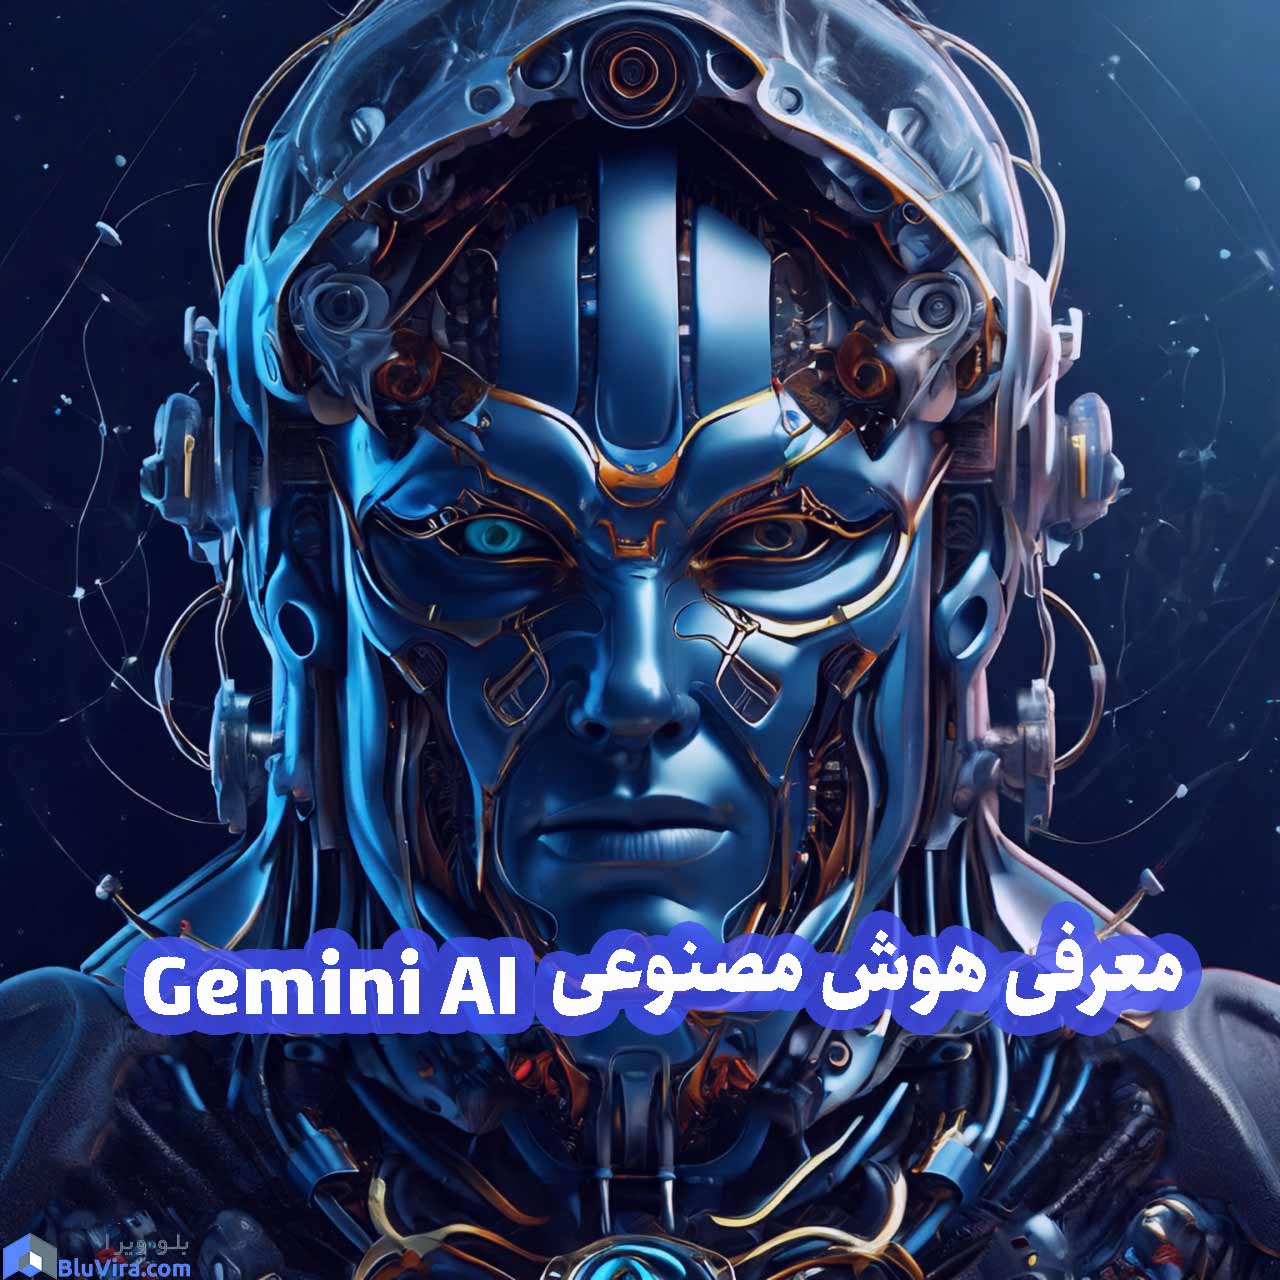 معرفی هوش مصنوعی Gemini AI